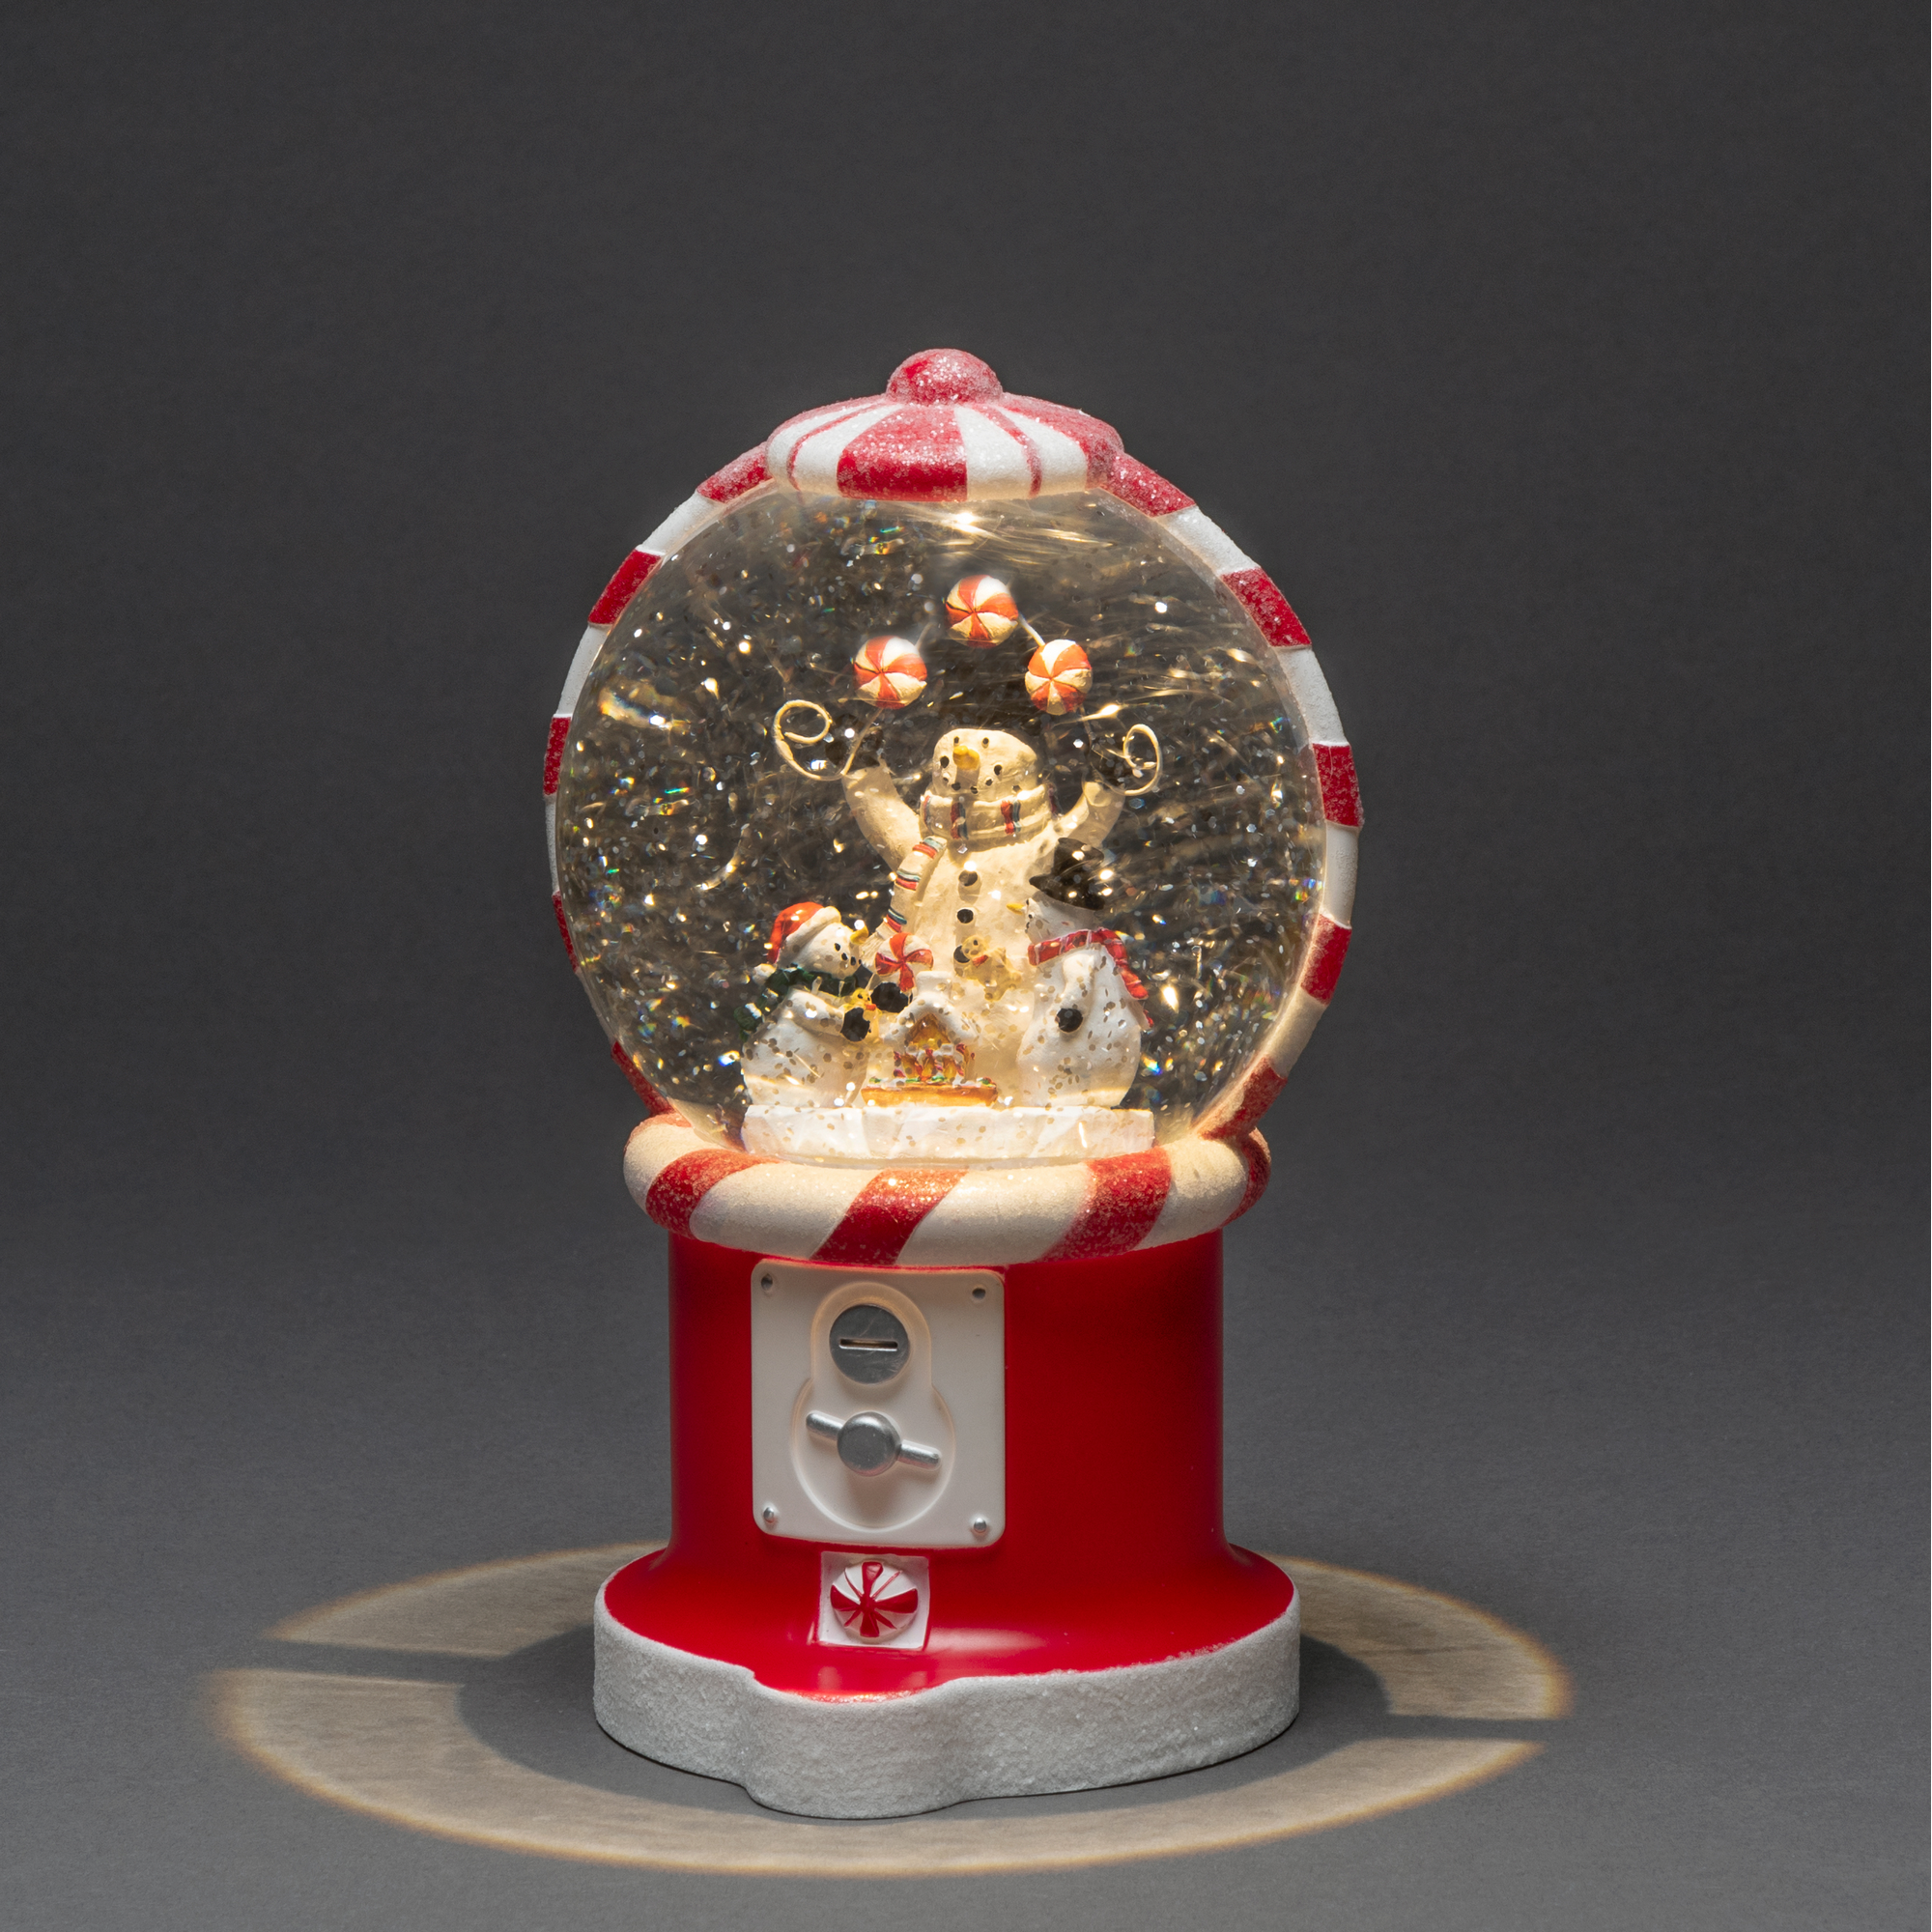 LED-Schneekugel 'Süßigkeiten-Automat' warmweiß 21 x 11 x 11 cm + product picture